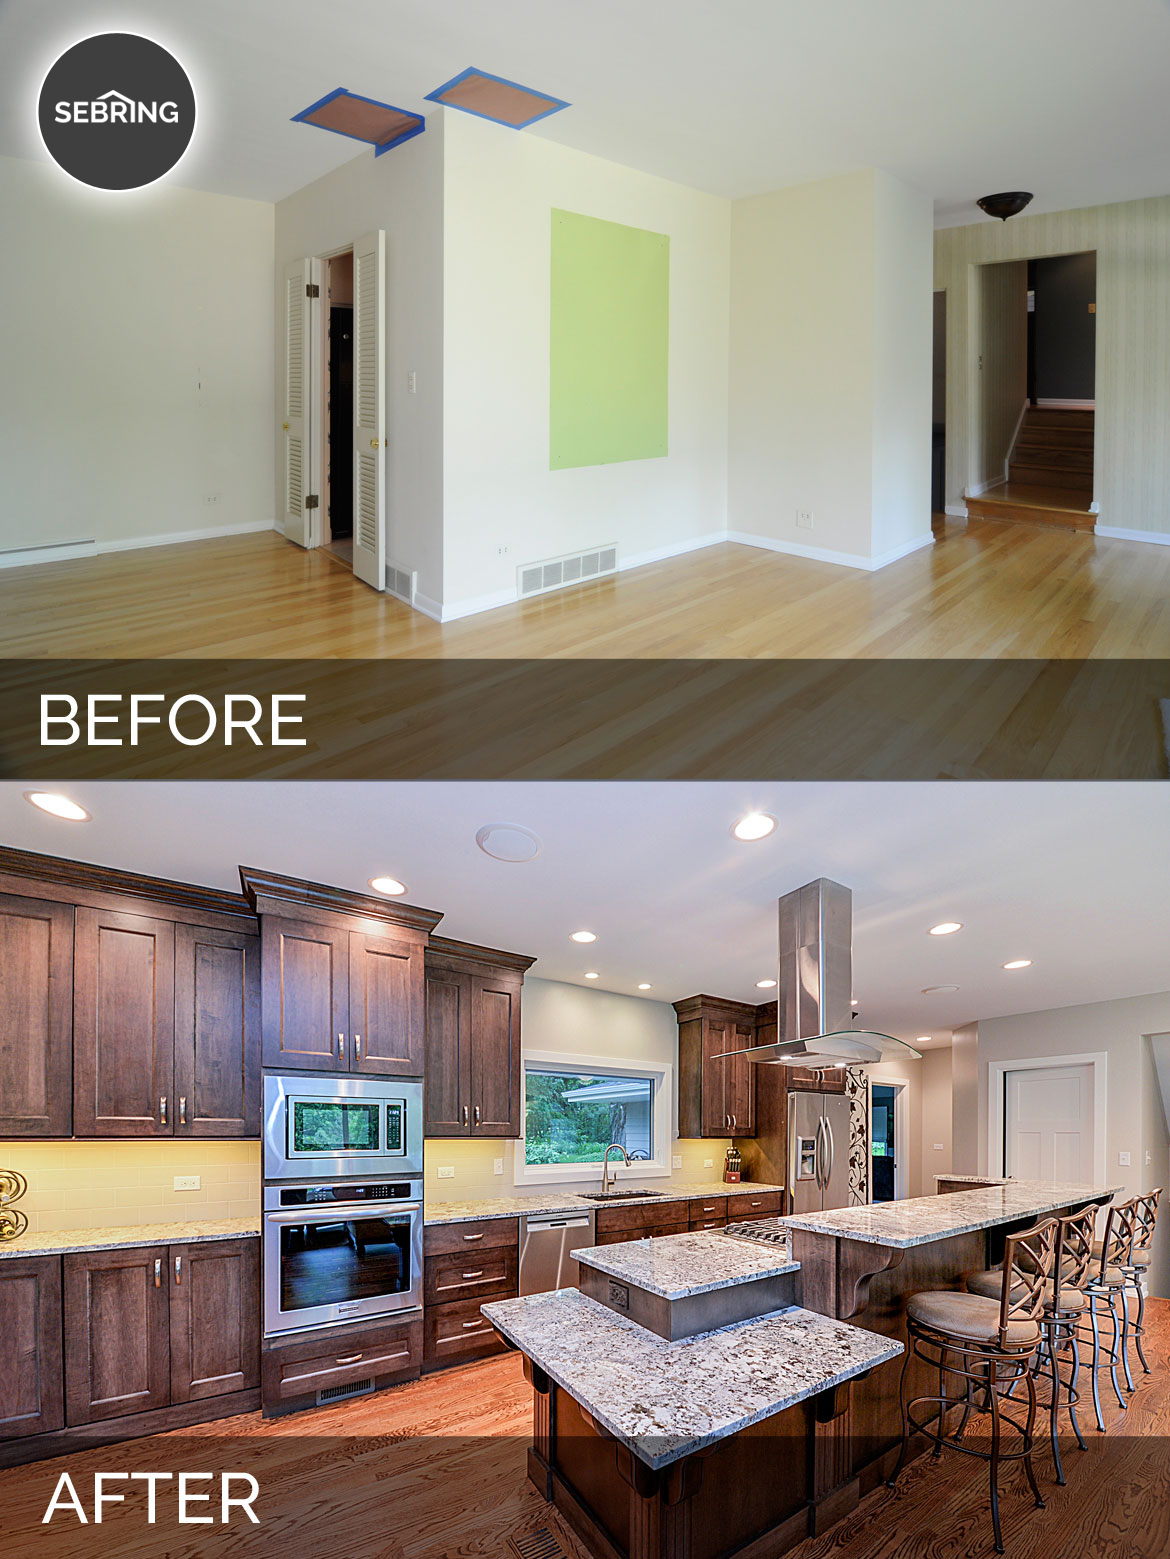 Before & After Kitchen Naperville - Sebring Design Build